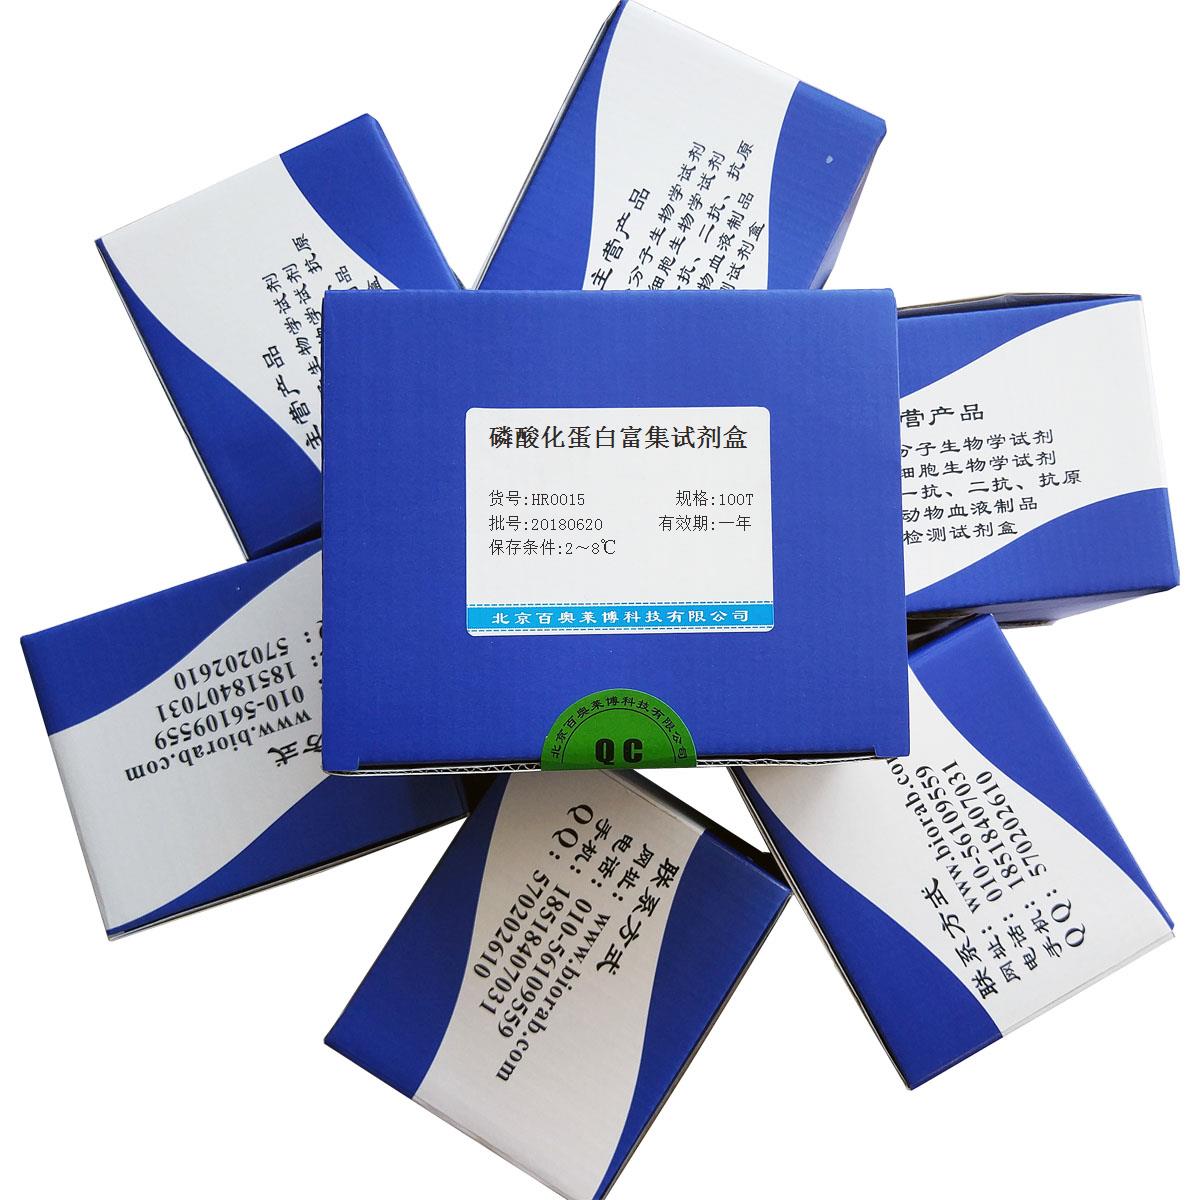 北京现货磷酸化蛋白富集试剂盒打折促销